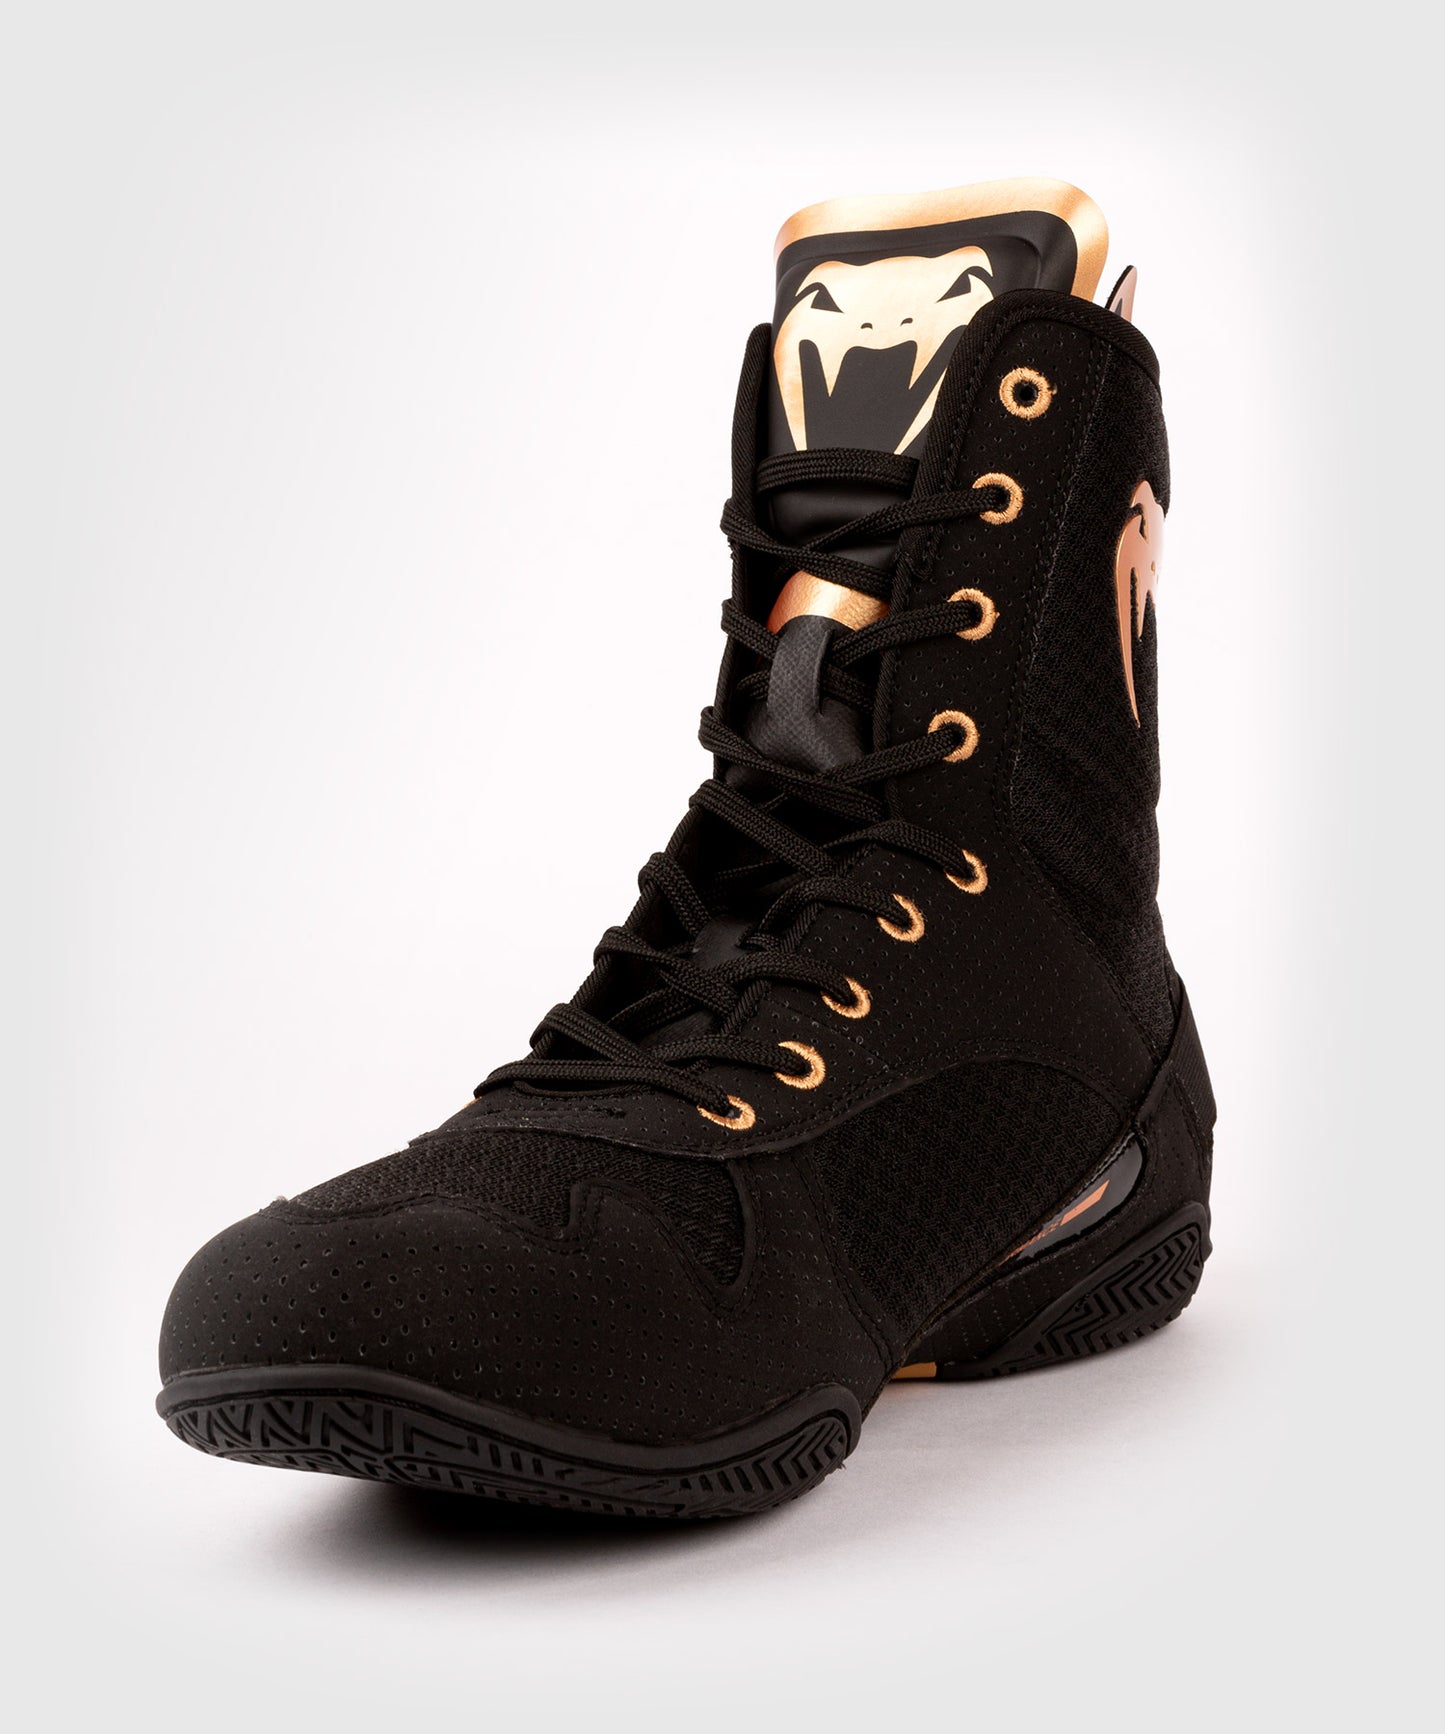 Zapatos de boxeo Venum Elite - Negro/Bronce